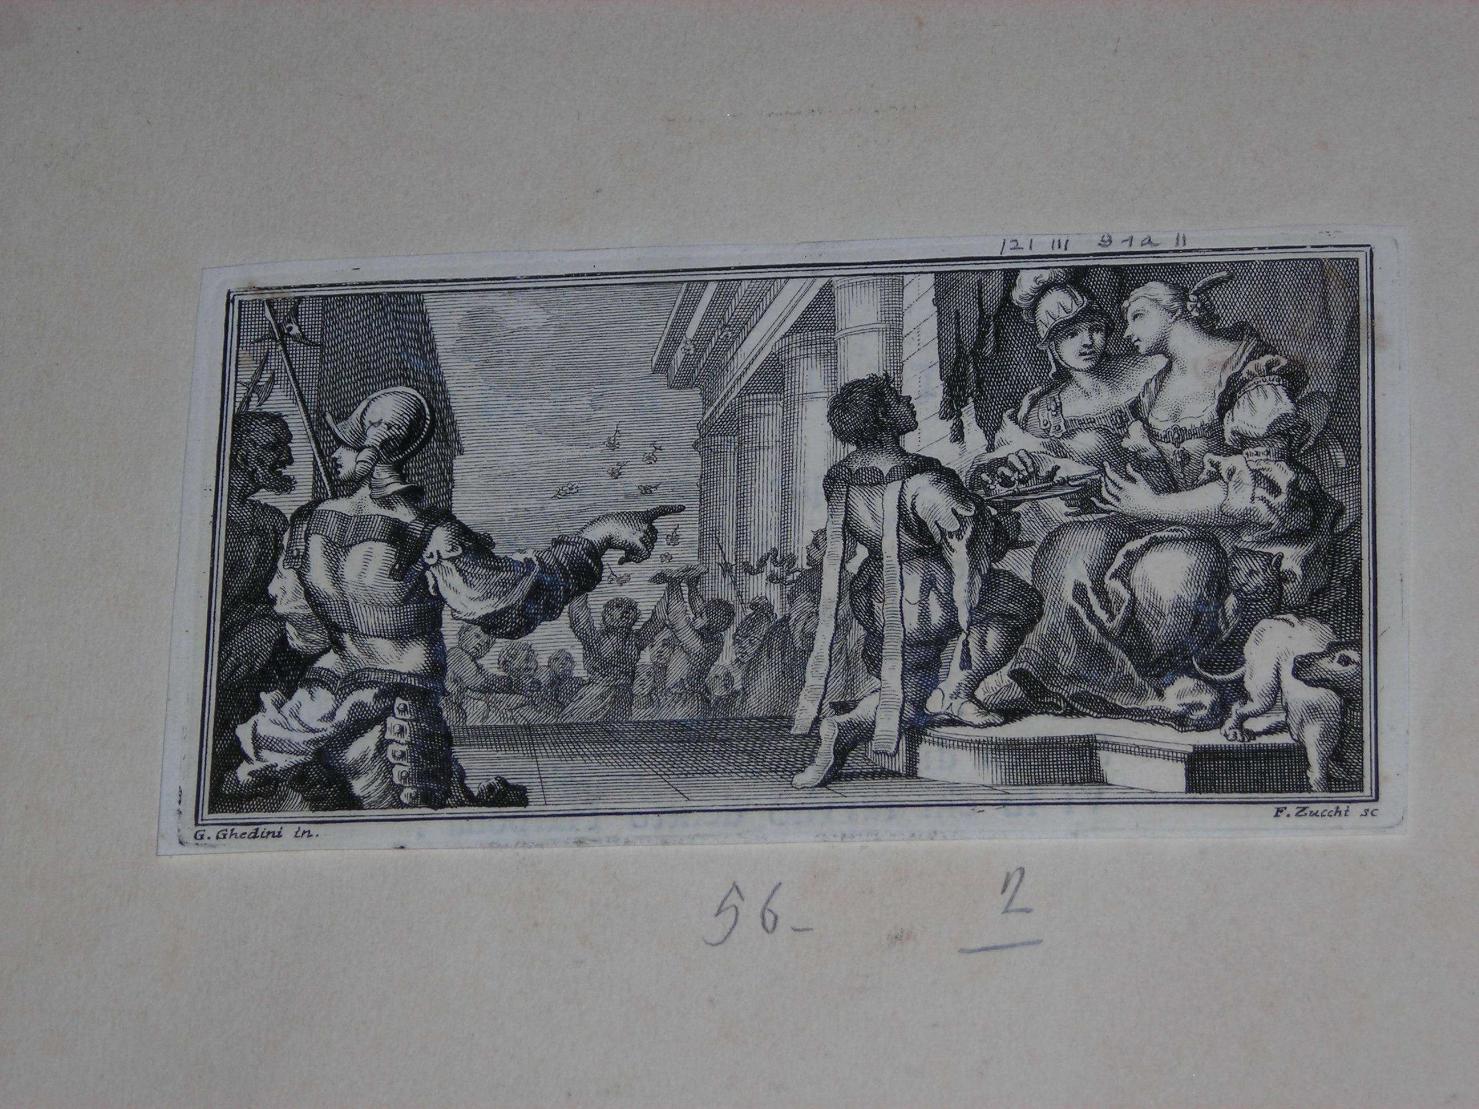 personaggi e scene da cicli letterari (stampa) di Ghedini Giuseppe Antonio, Zucchi Francesco (sec. XVIII)